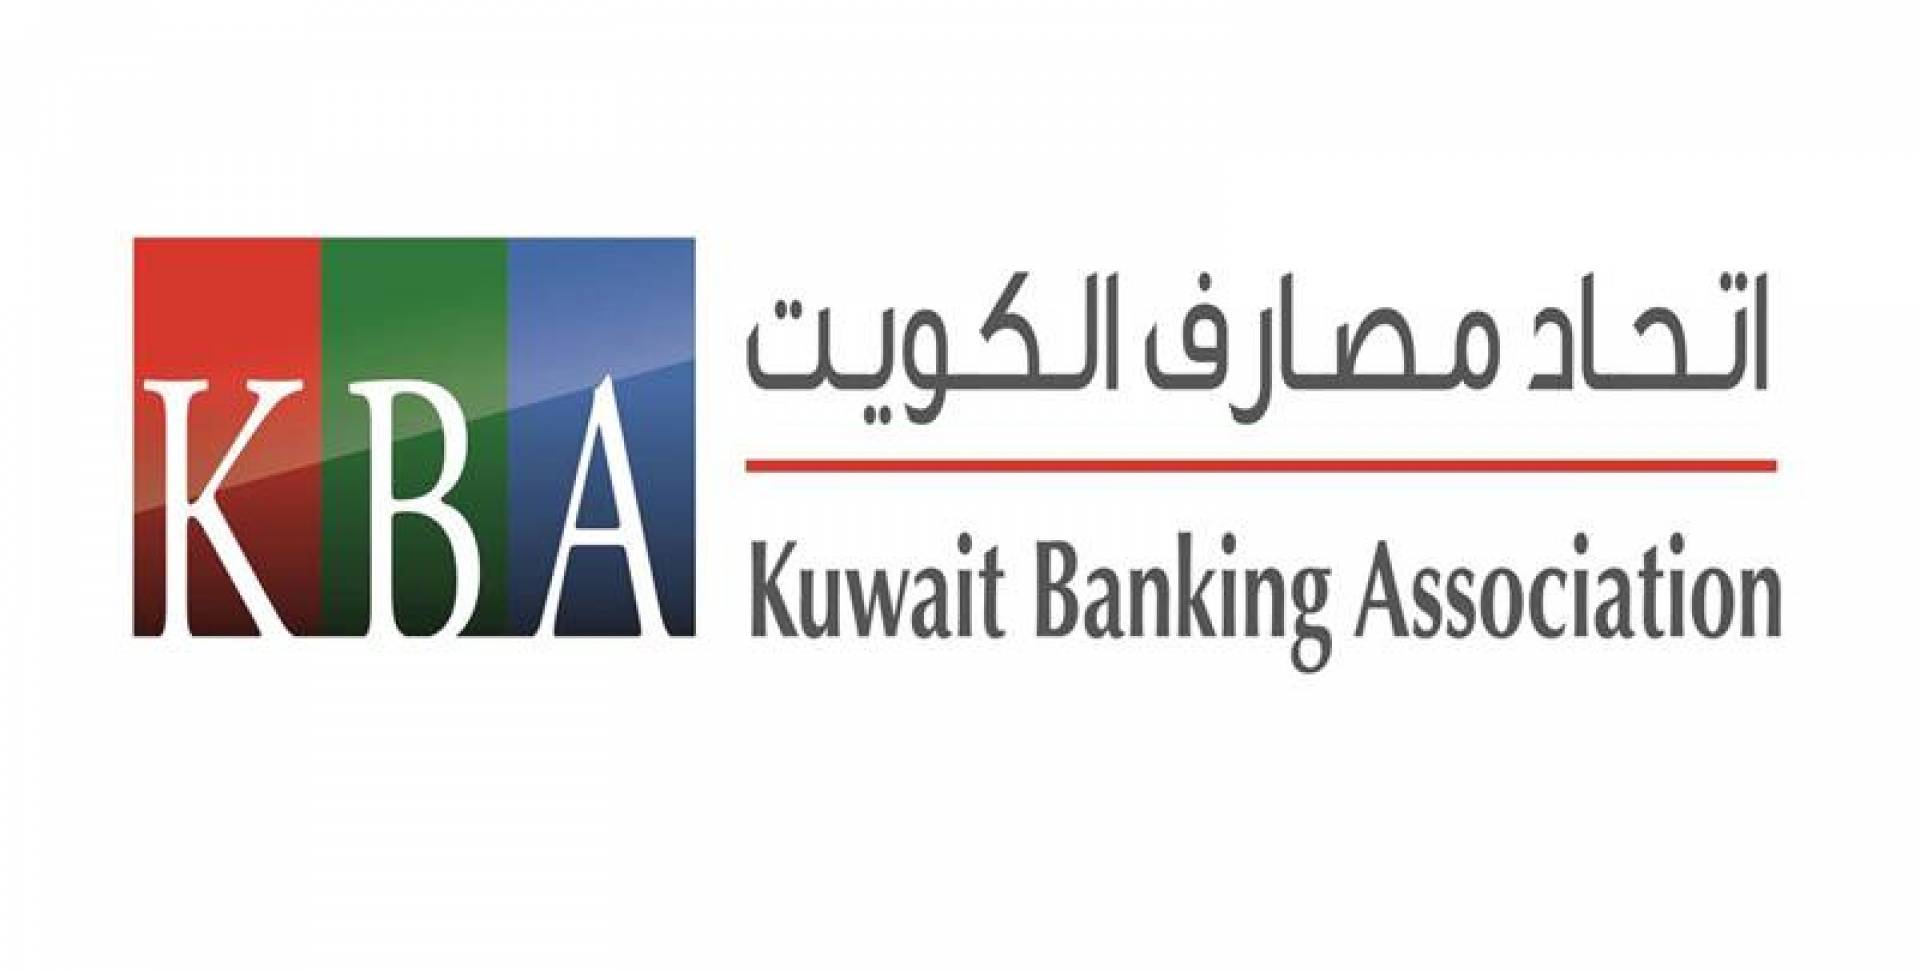 اتحاد مصارف الكويت: البنوك المحلية لديها القوة والمتانة التي تؤهلها للتعامل مع هذه الازمة